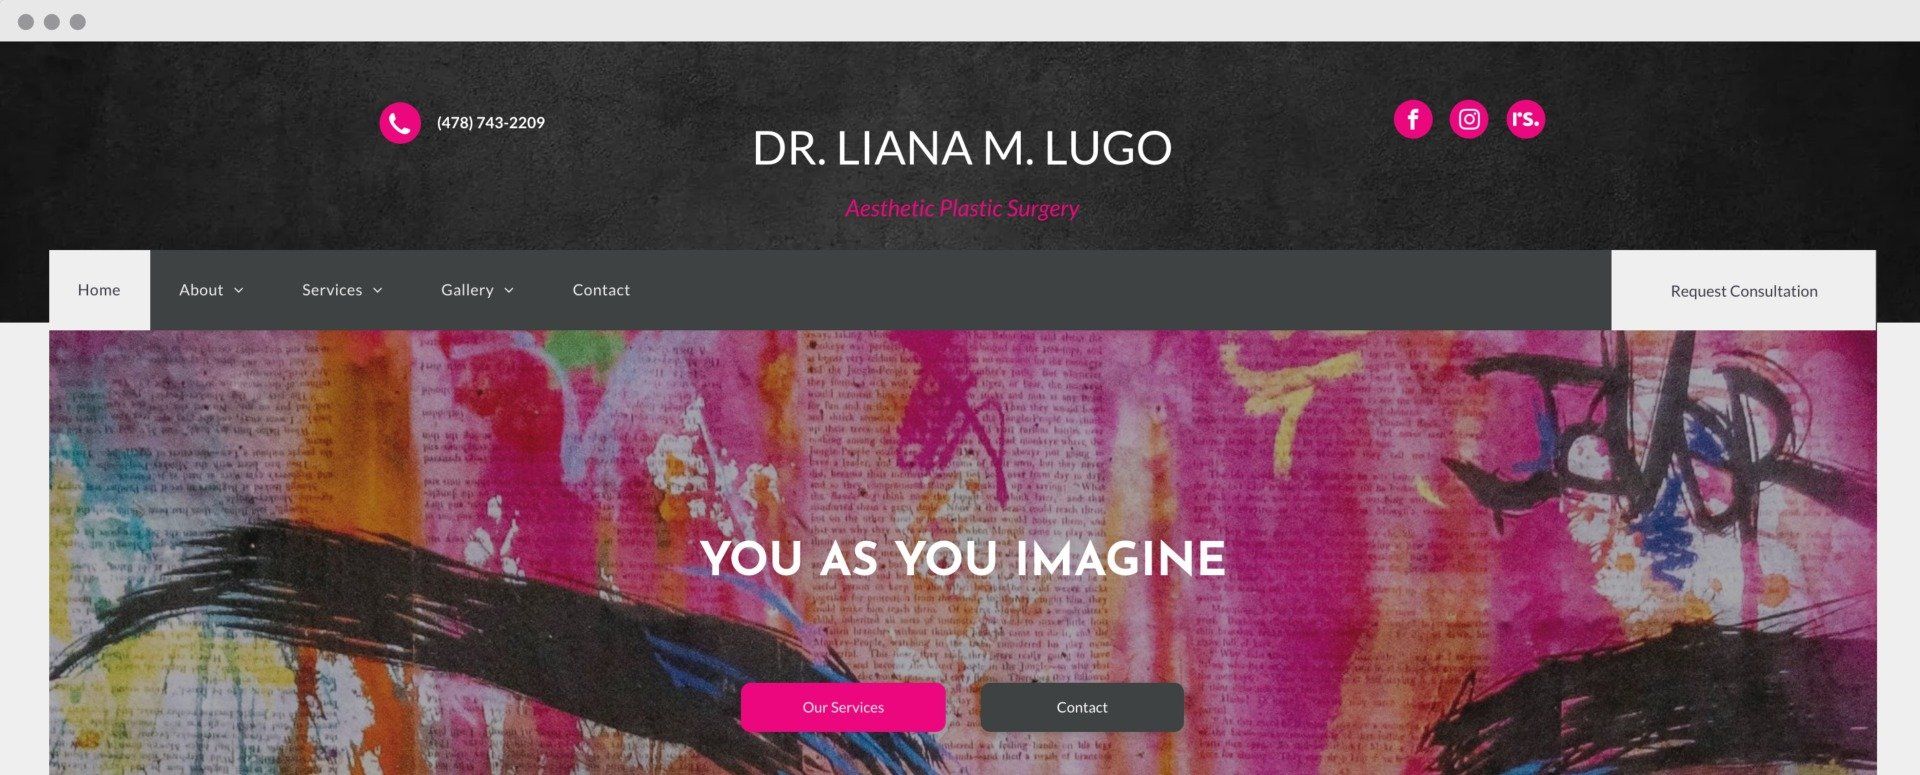 Dr. Liana M. Lugo